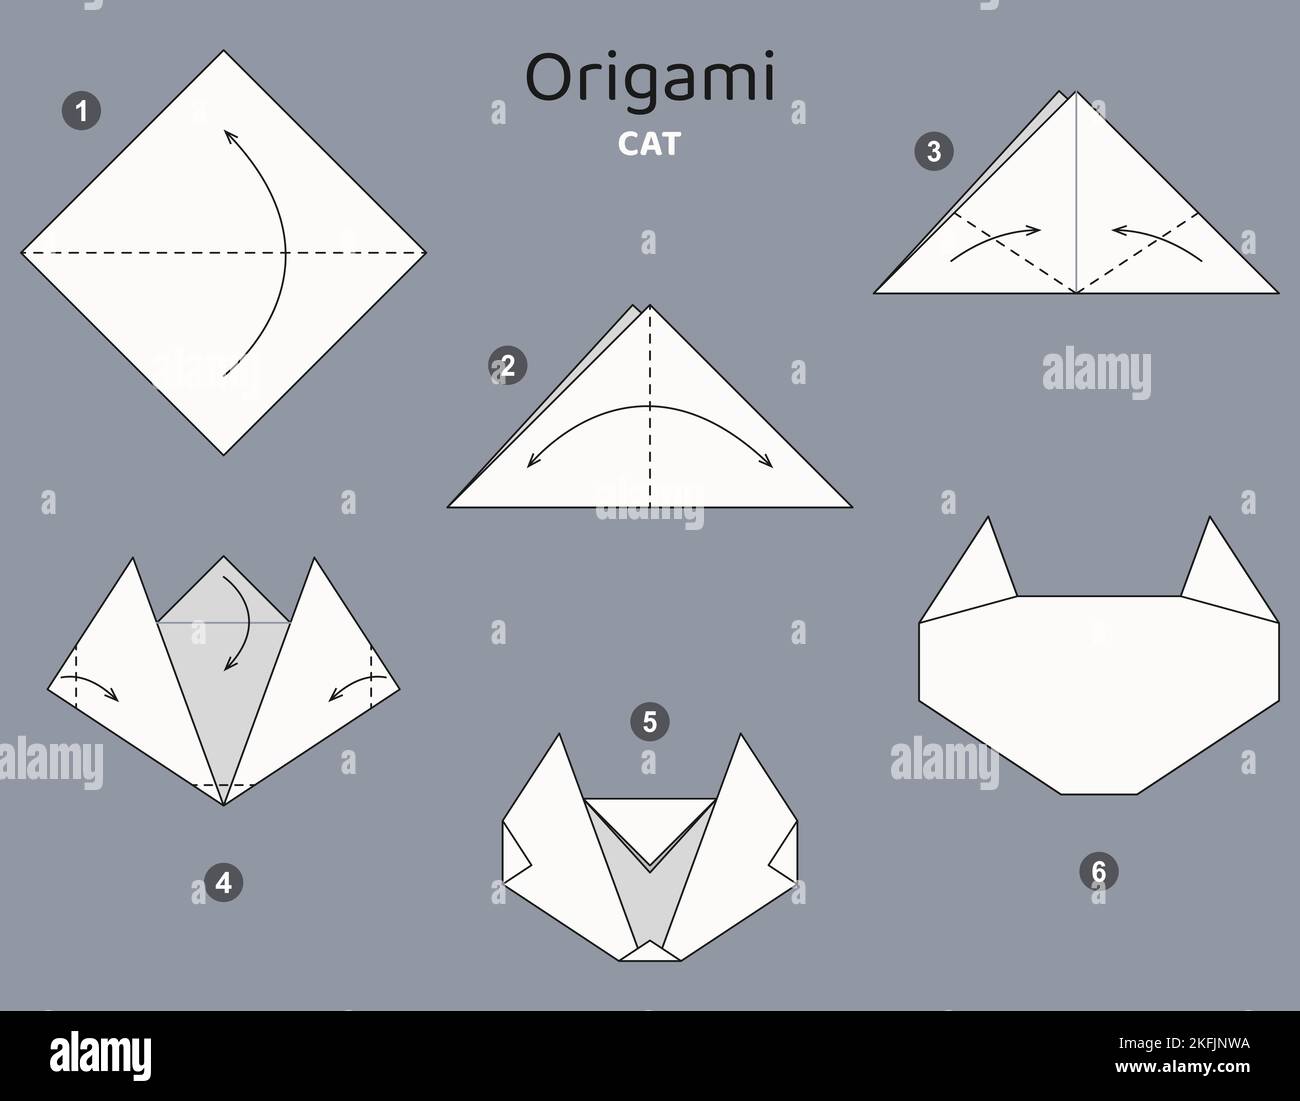 Tutorial Origami. Schema Origami per bambini. Cat. Illustrazione Vettoriale